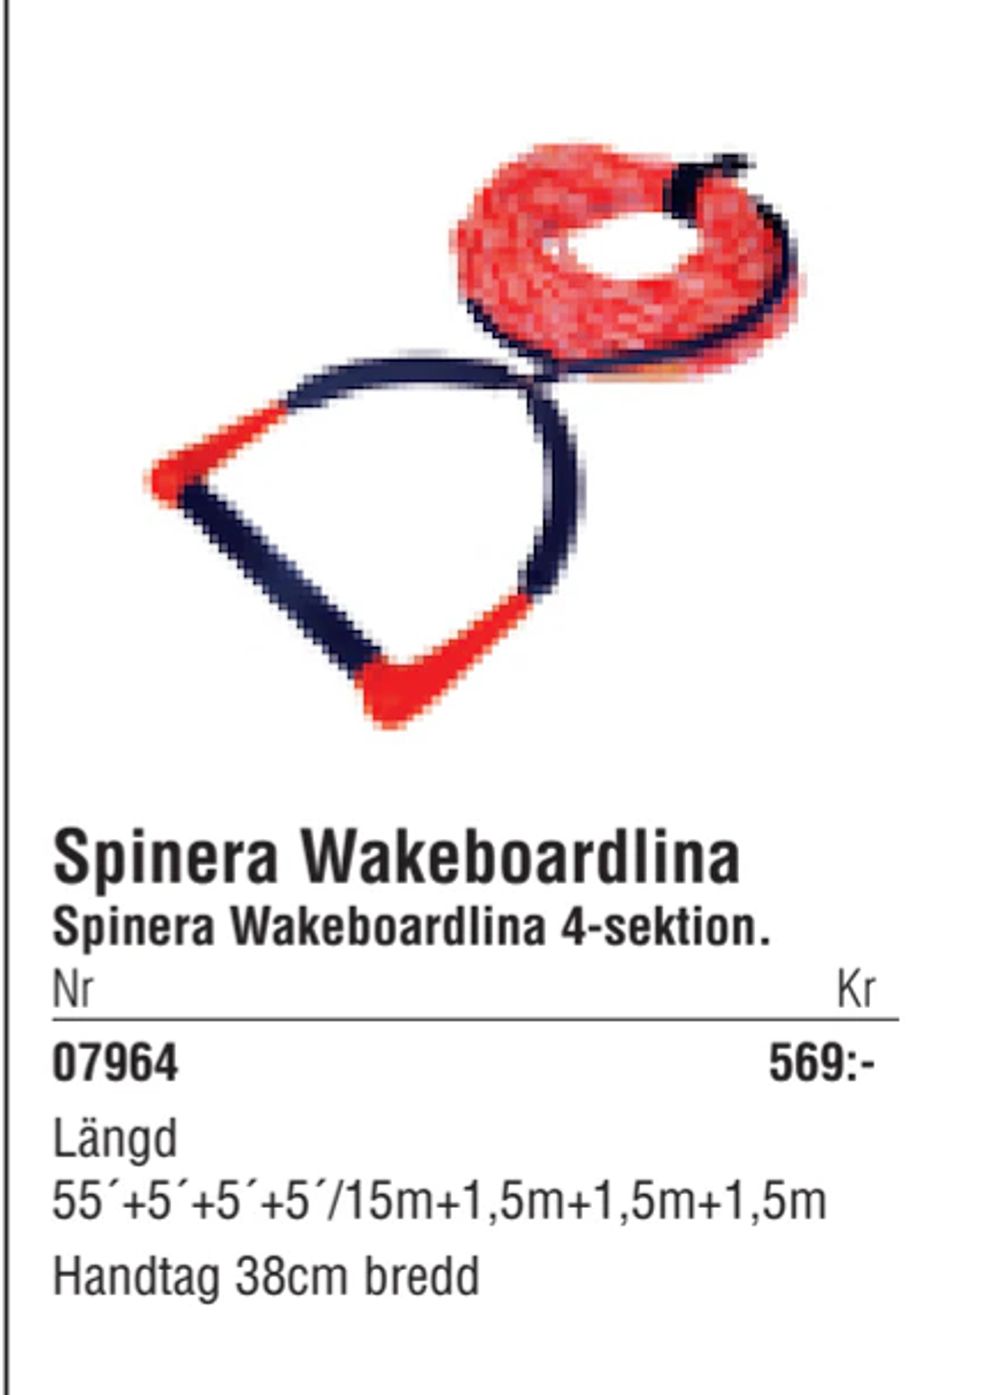 Erbjudanden på Spinera Wakeboardlina från Erlandsons Brygga för 569 kr